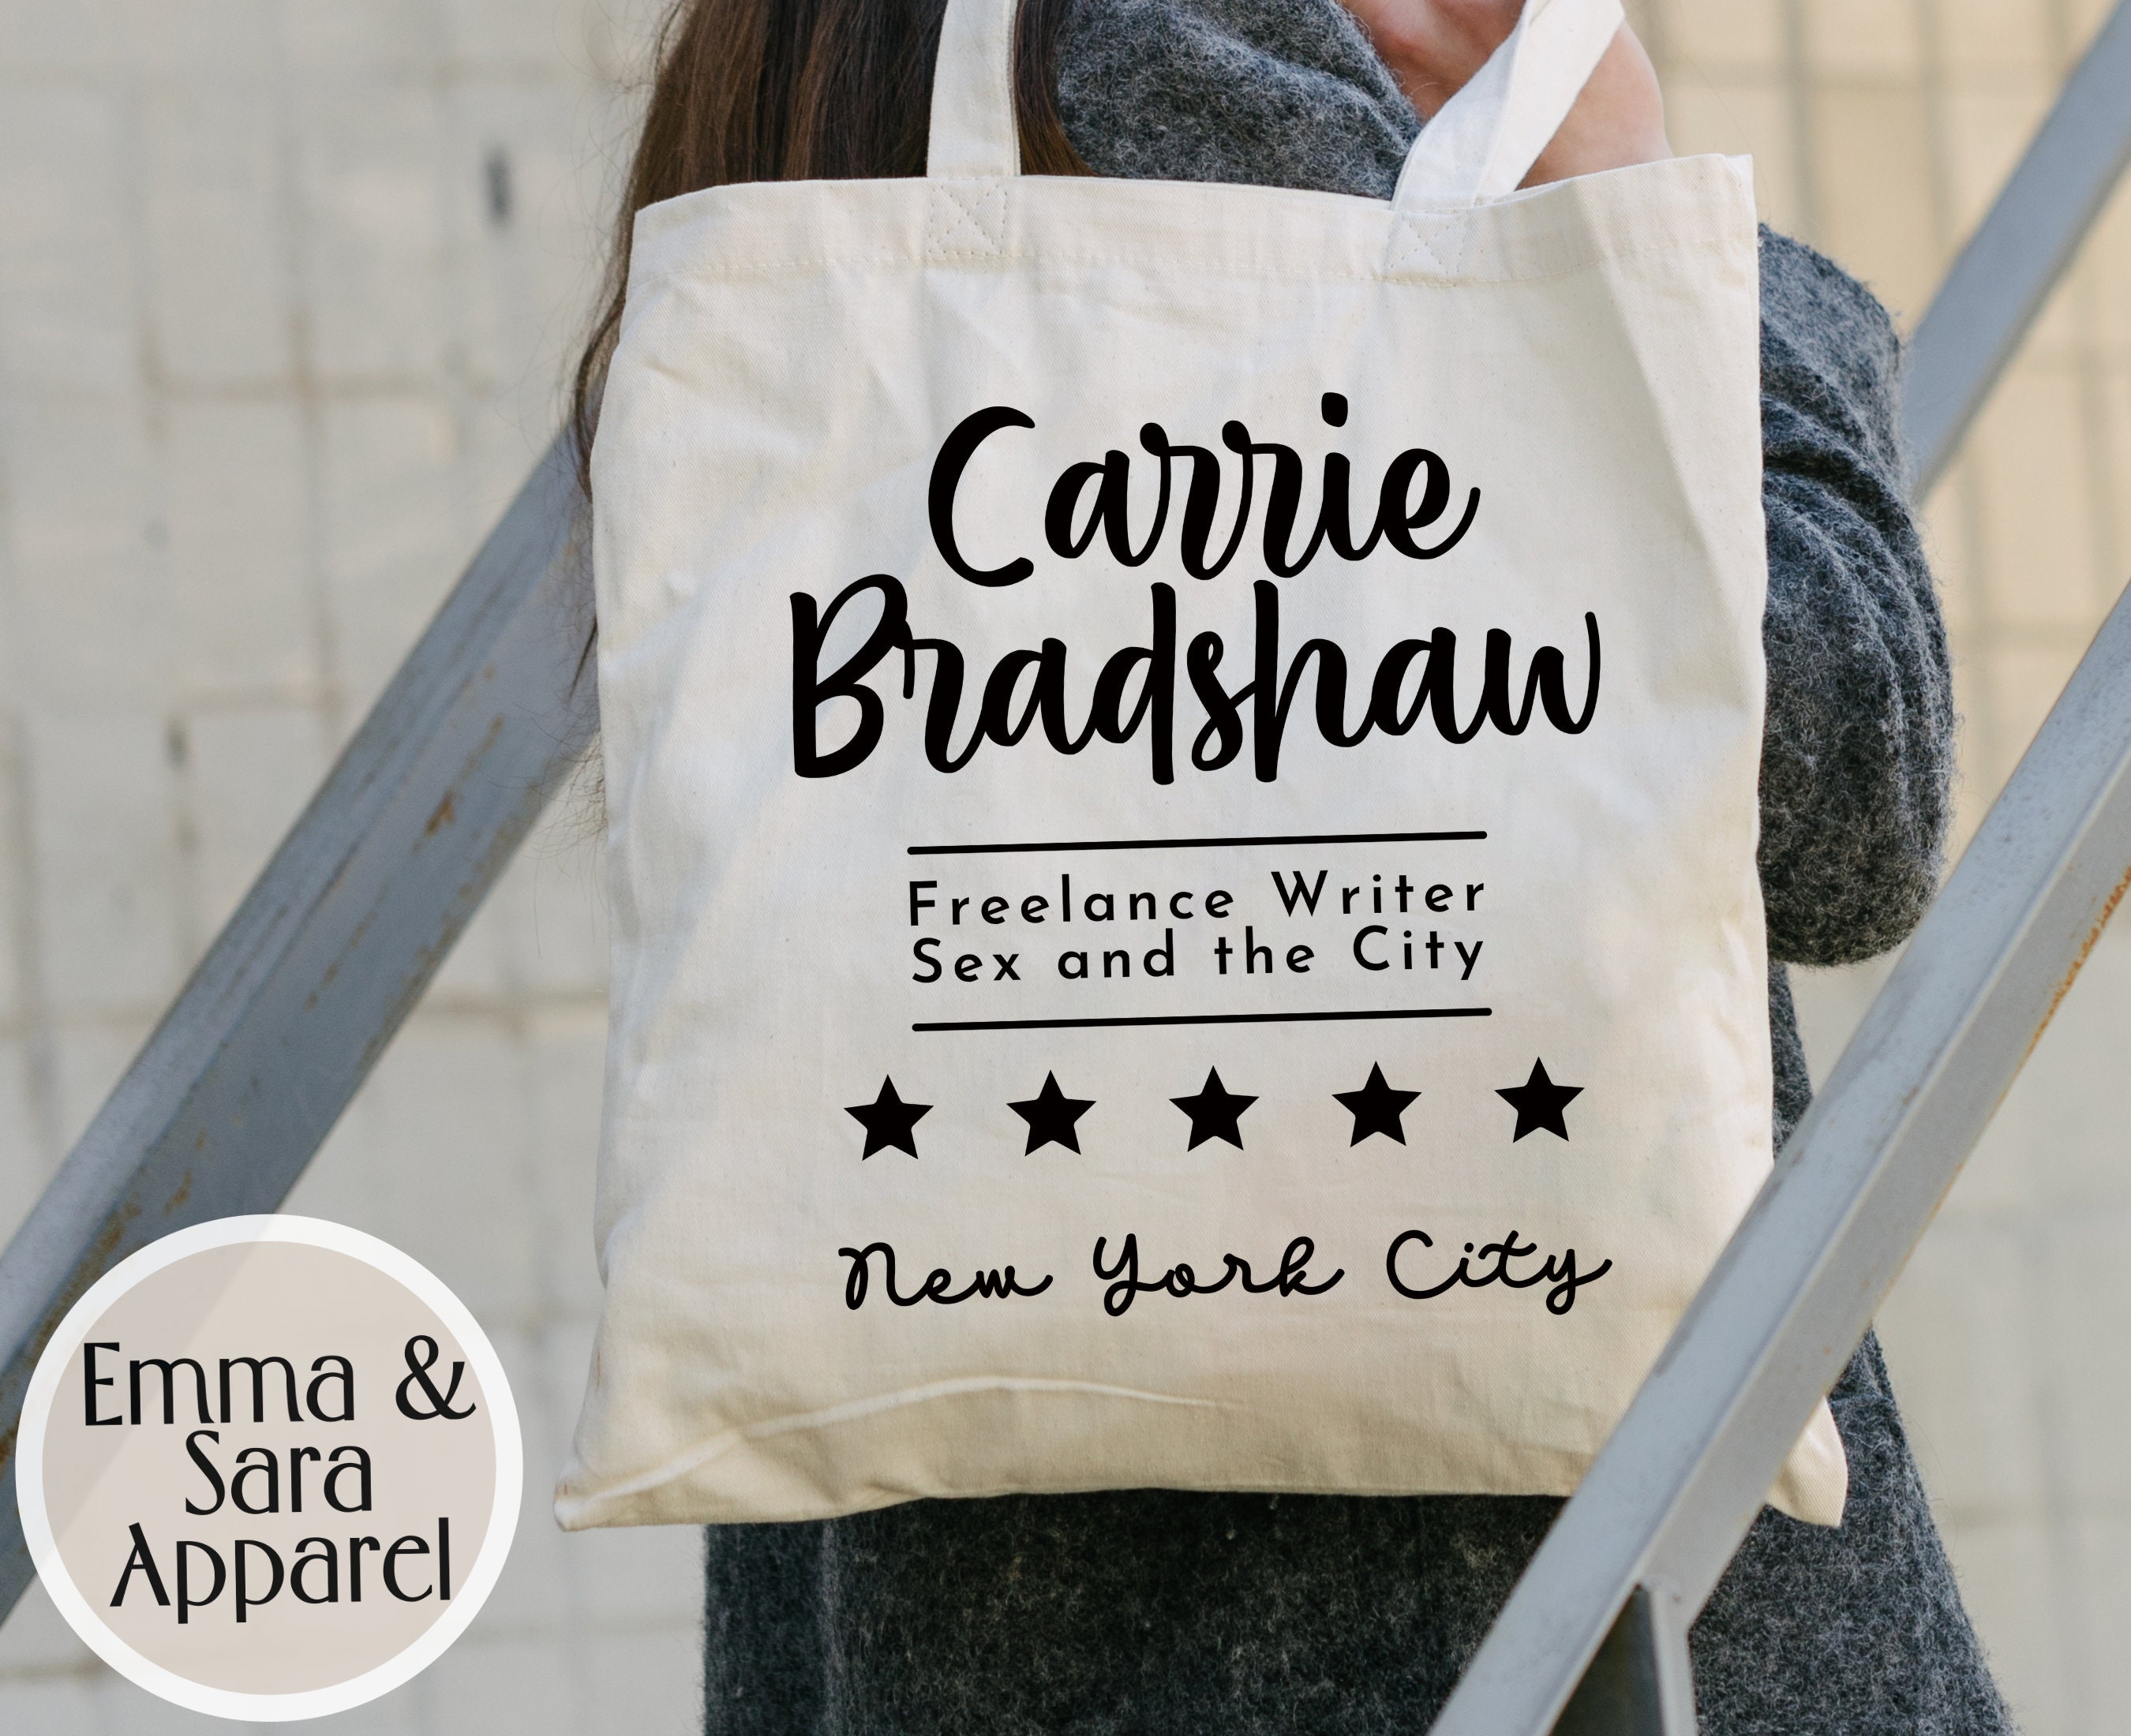 Carrie Bradshaw's favourite handbag has made a comeback